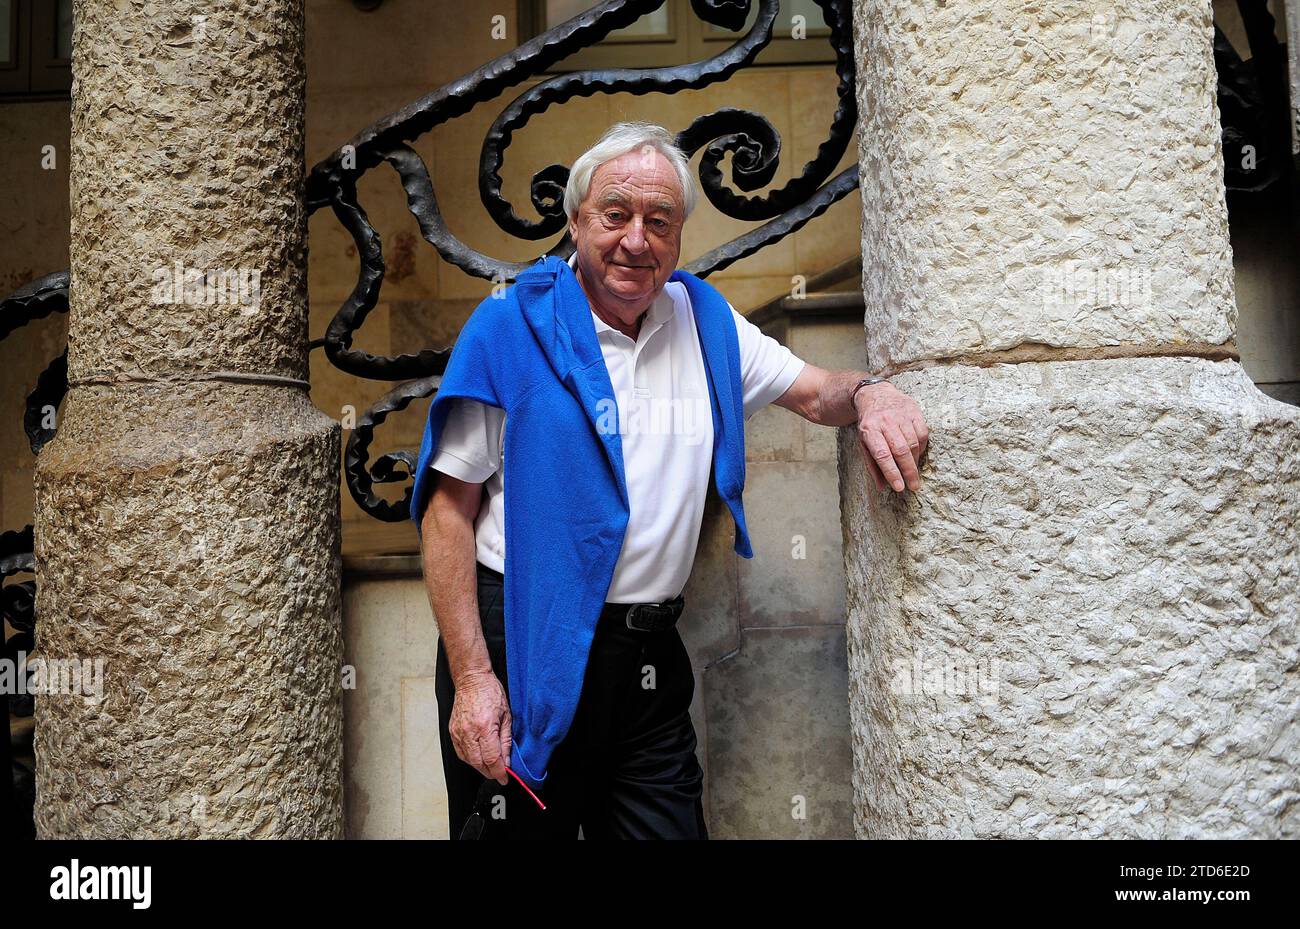 Barcelona, 29.09.2014. Interview mit dem niederländischen Schriftsteller Cees Nooteboom. Foto: Inés Baucells. ARCHDC. Quelle: Album / Archivo ABC / Inés Baucells Stockfoto